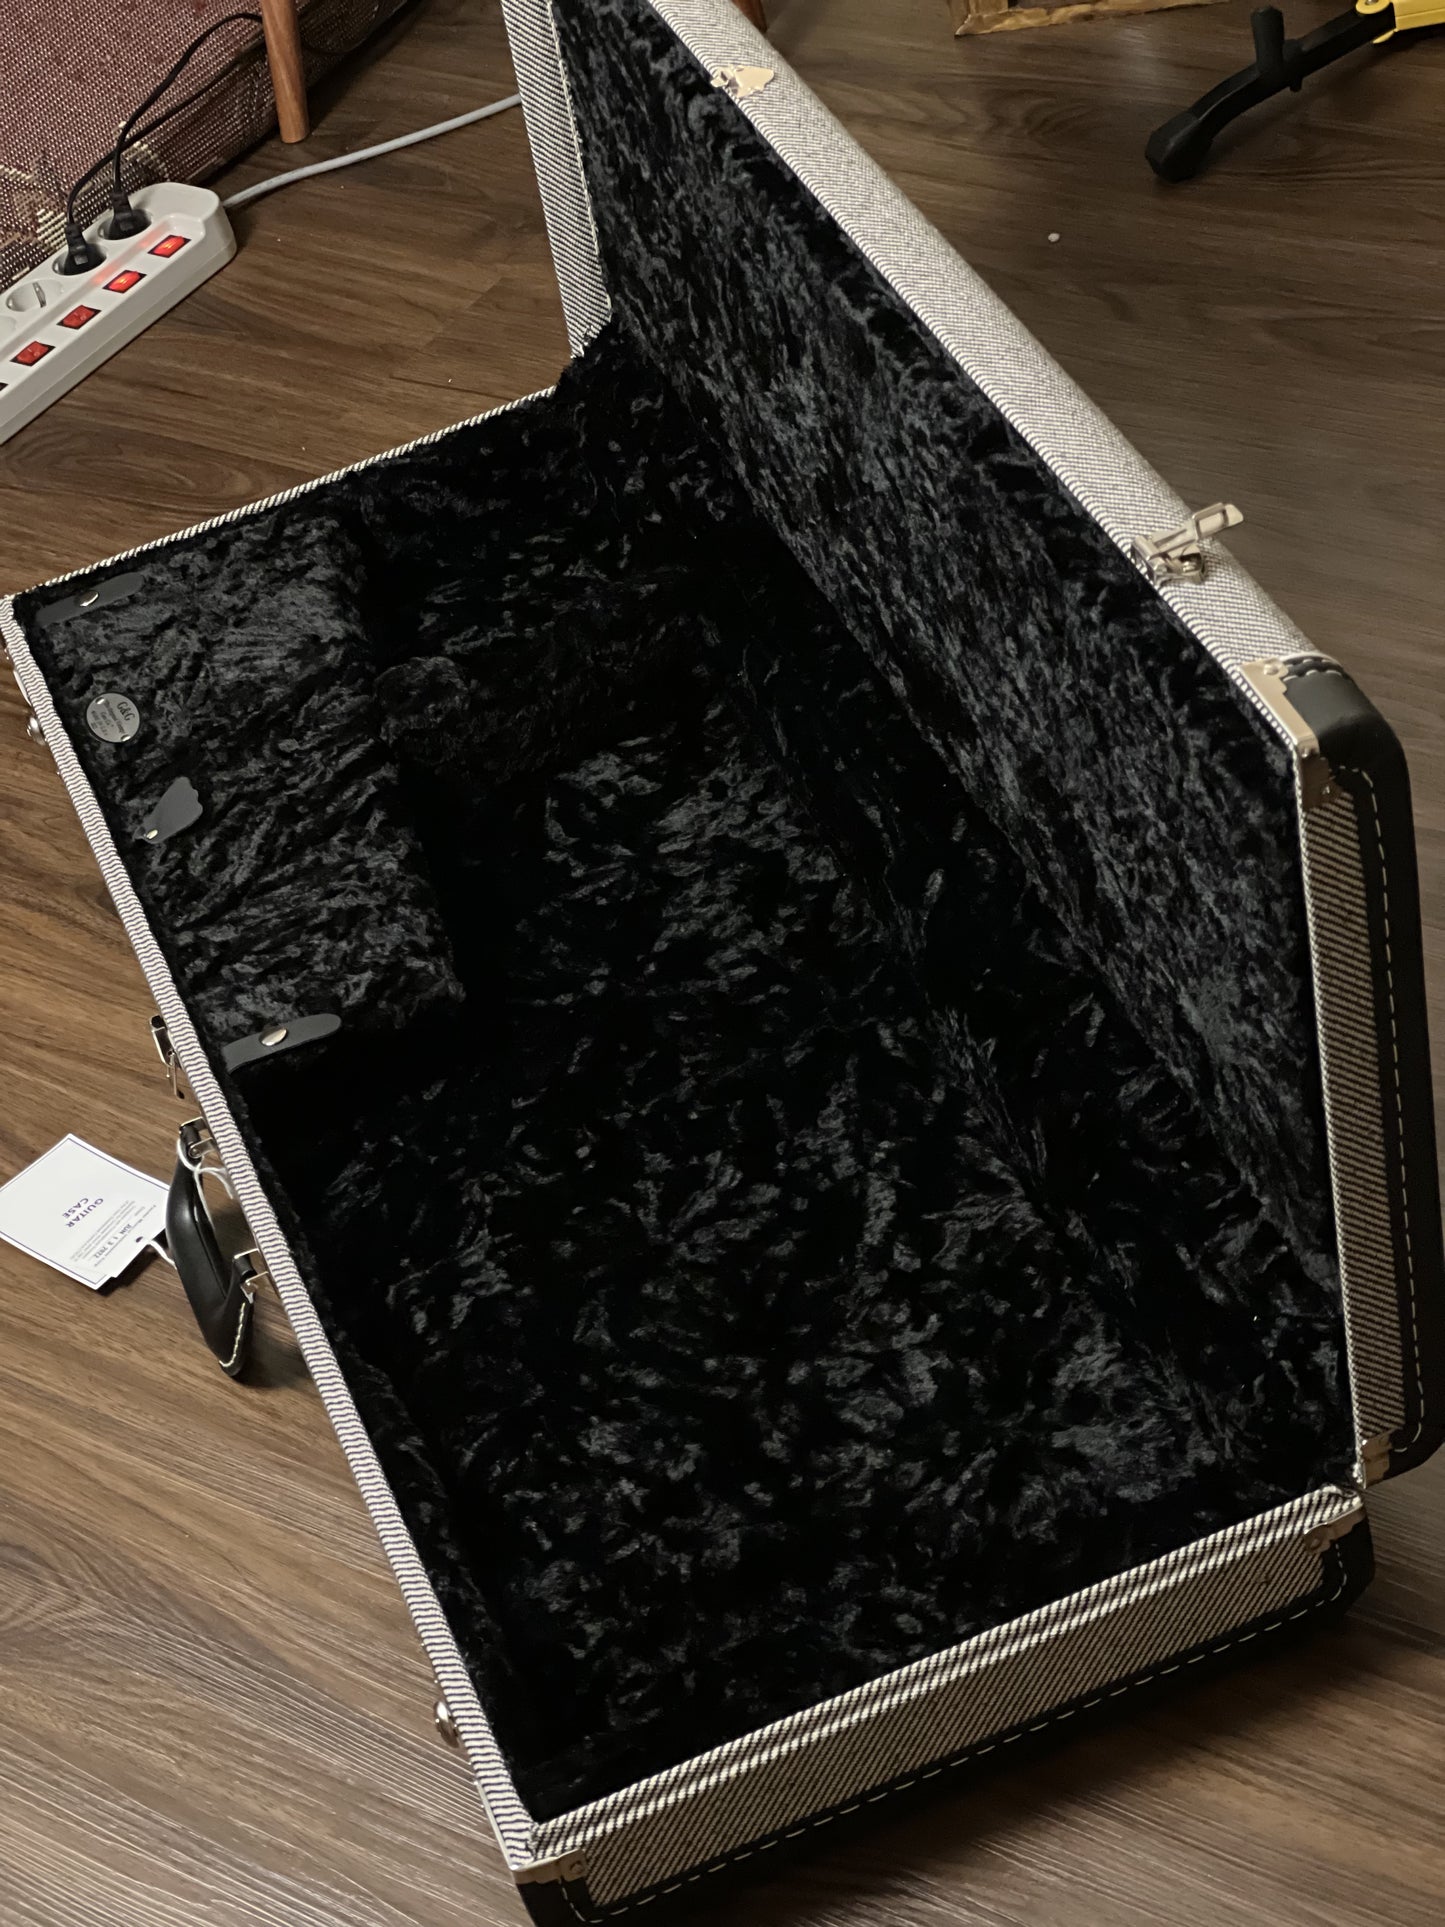 Fender Deluxe Strat/Tele Guitar Case in Black Tweed